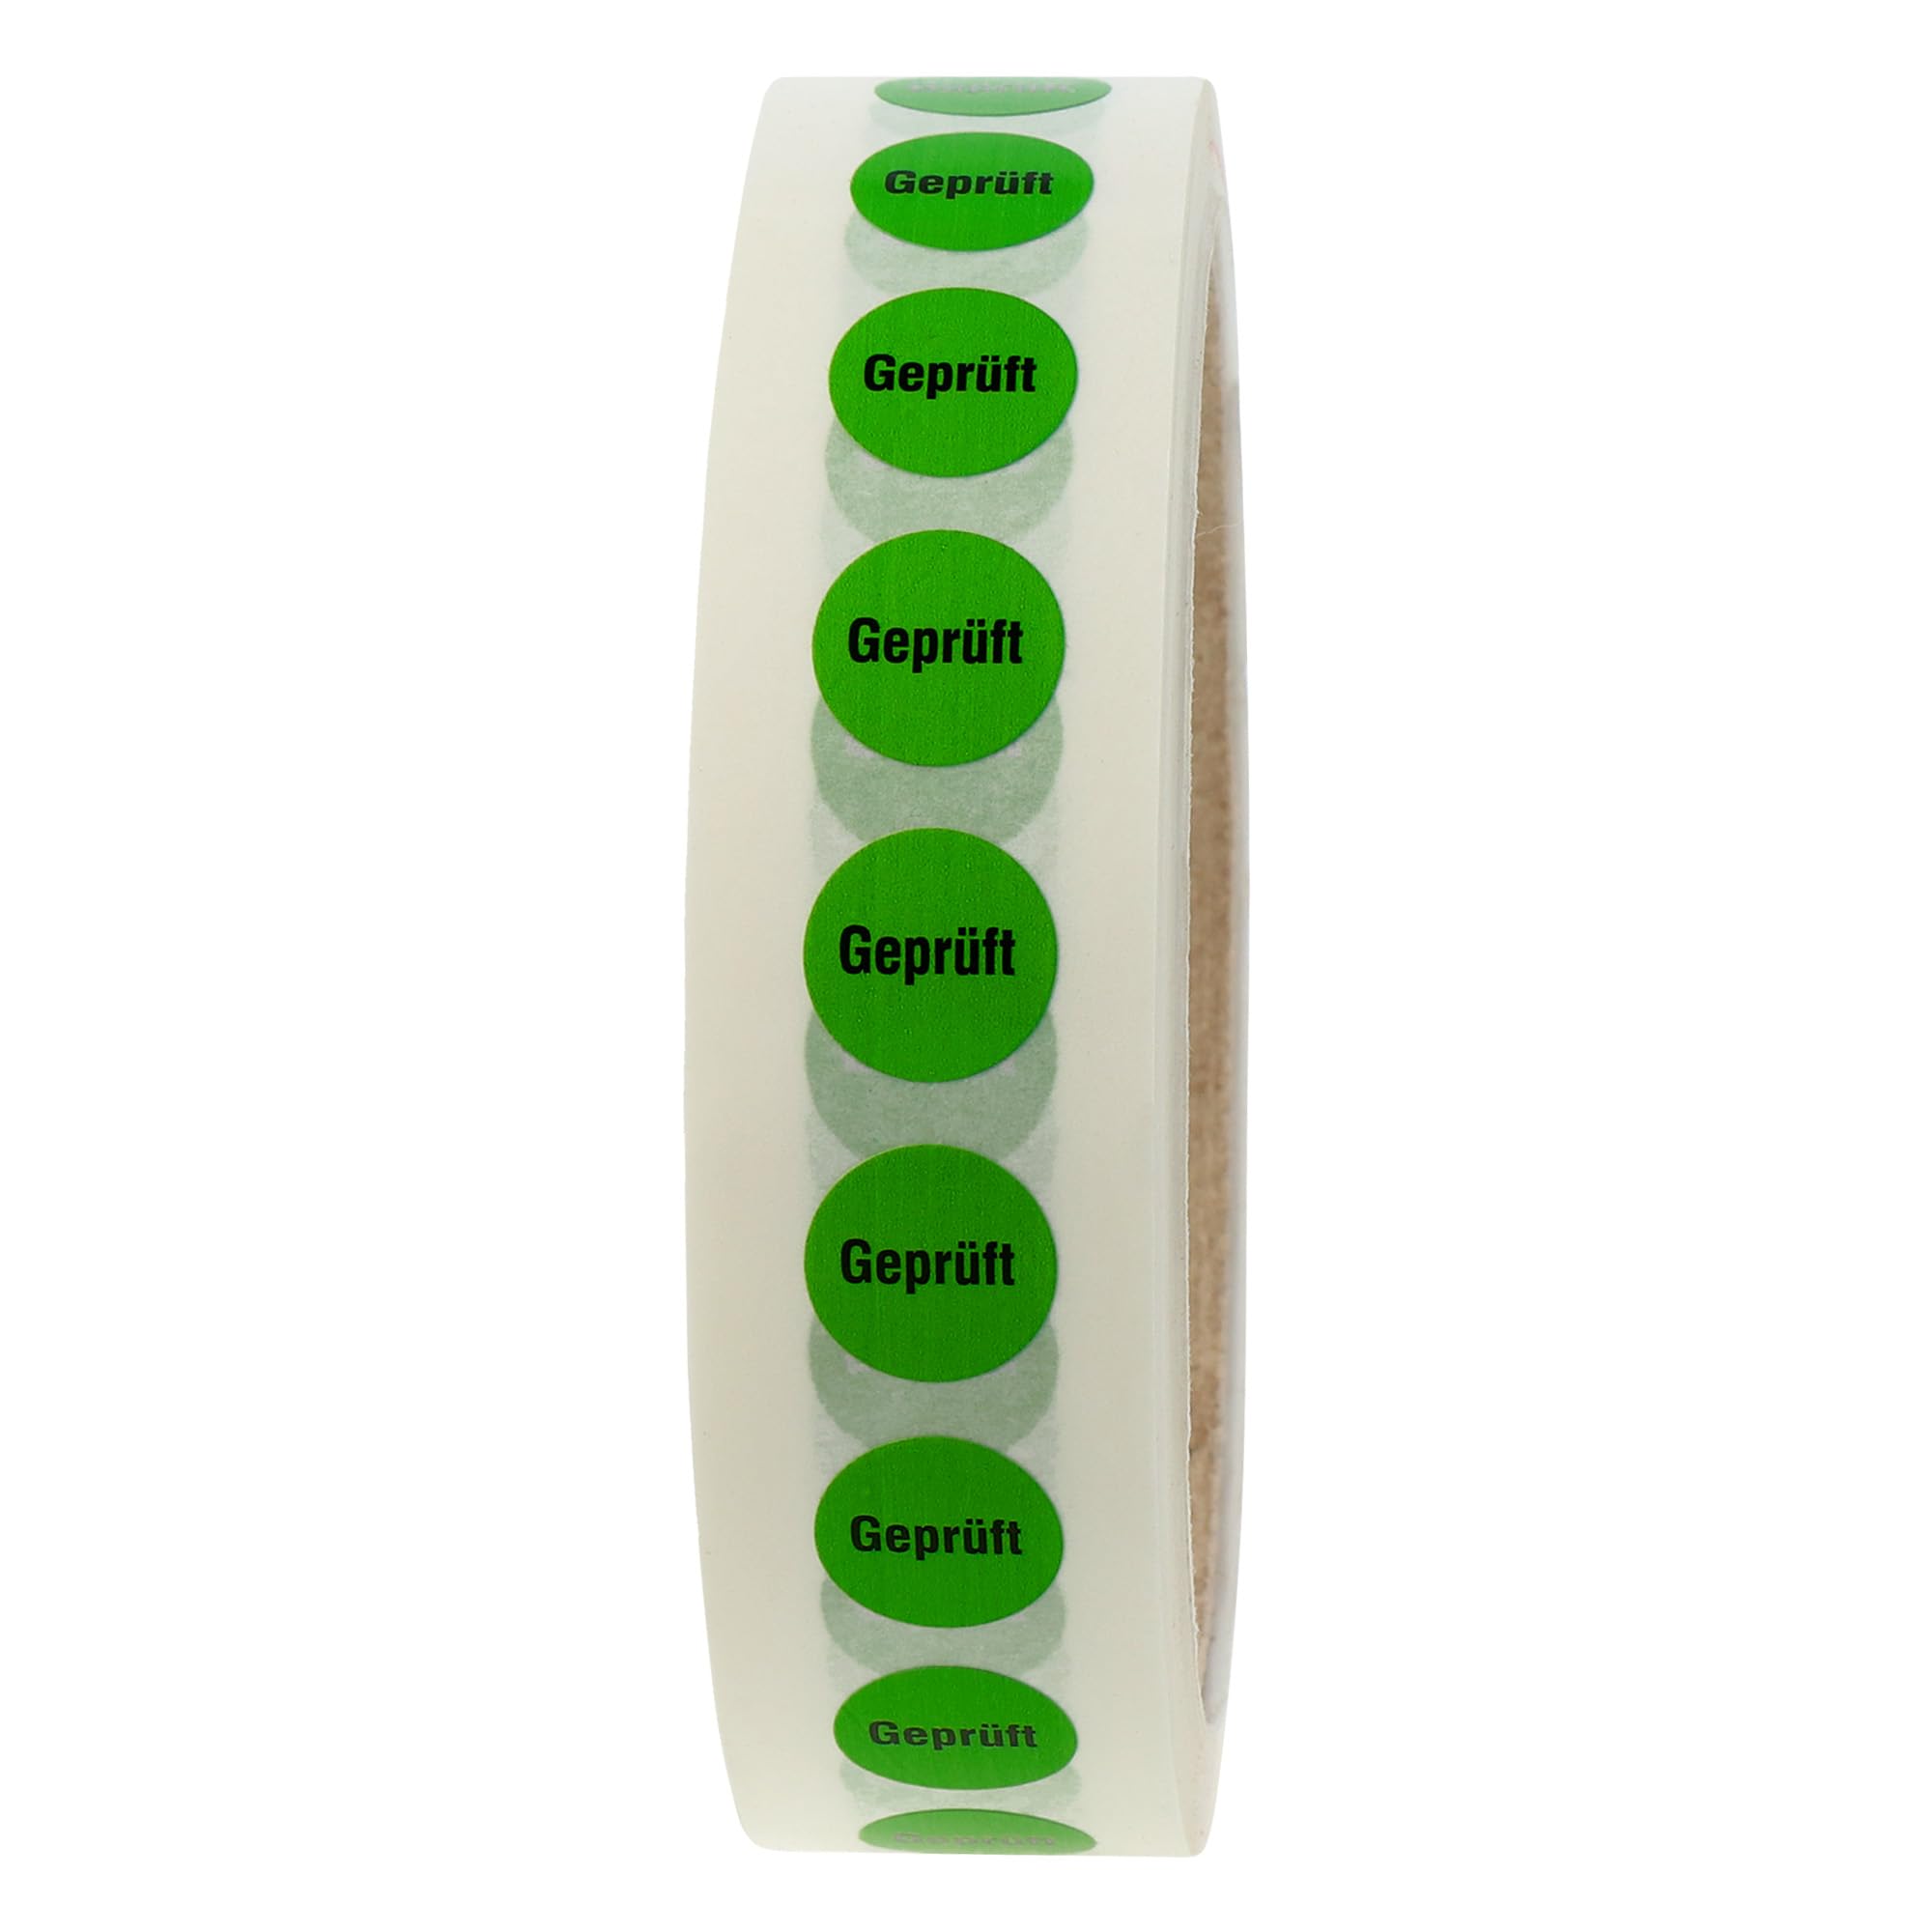 Labelident Qualitätssicherungsetiketten - Geprüft - Ø 13 mm - 1000 QS-Etiketten auf Rolle, Polyester grün, selbstklebend